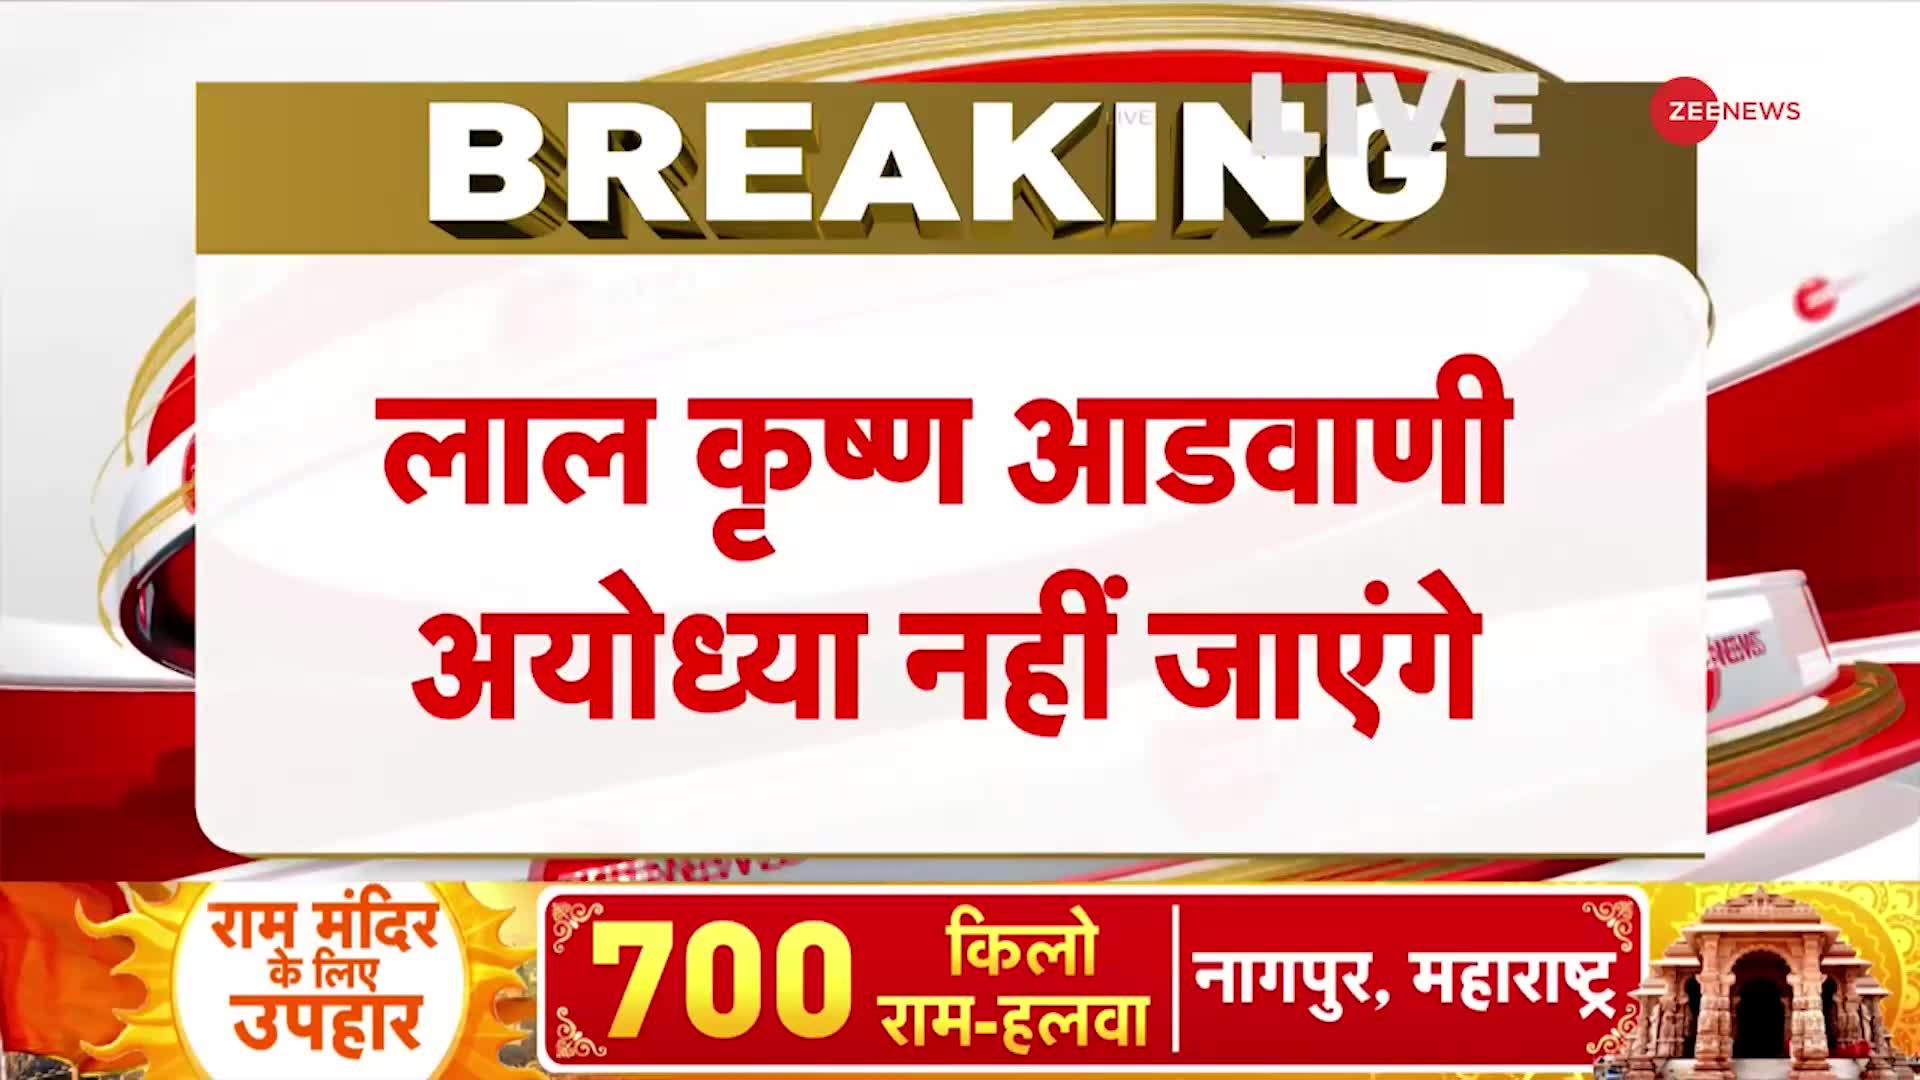 Ayodhya Ram Mandir LIVE updates: स्वास्थ्य कारणों की वजह से आडवाणी का दौरा रद्द